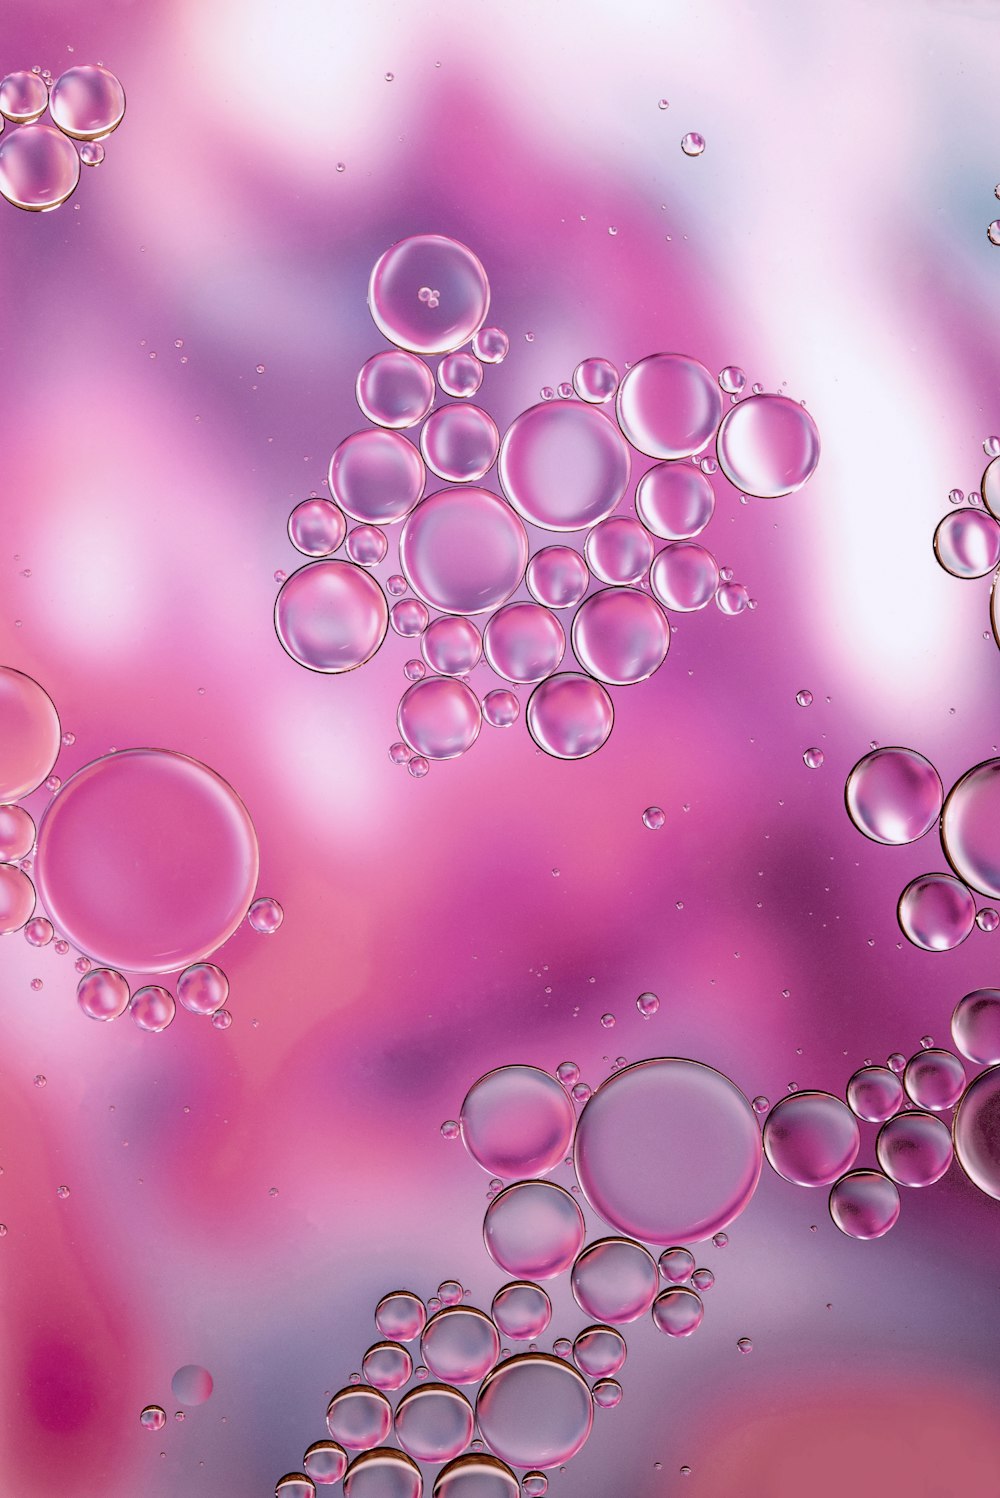 Eine Nahaufnahme von Blasen auf einem lila-rosa Hintergrund